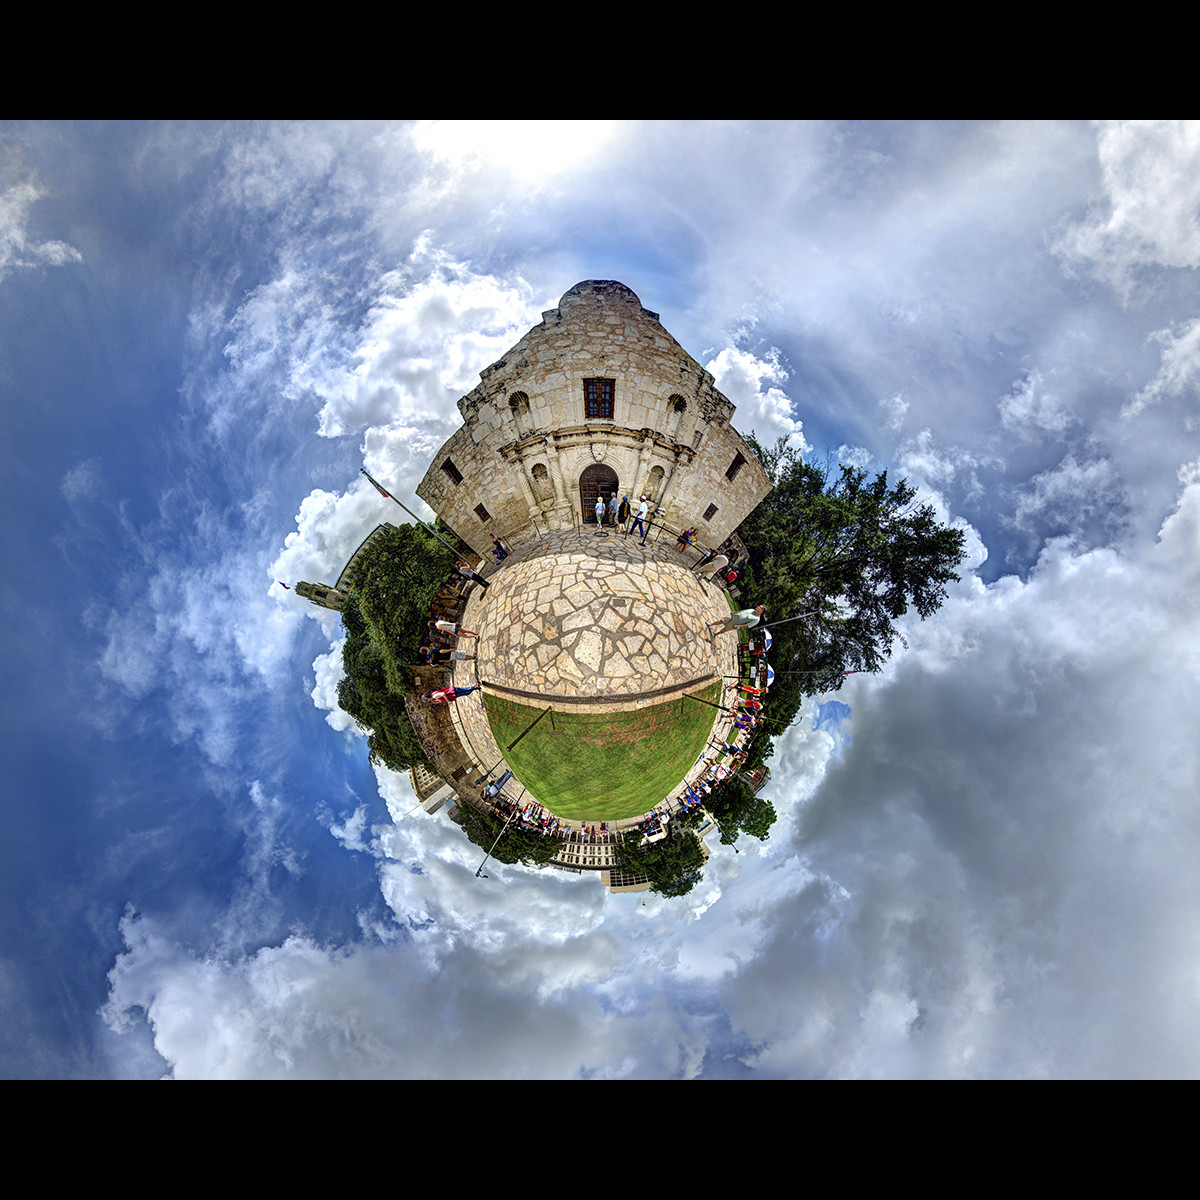 Alamo by Syd Moen 